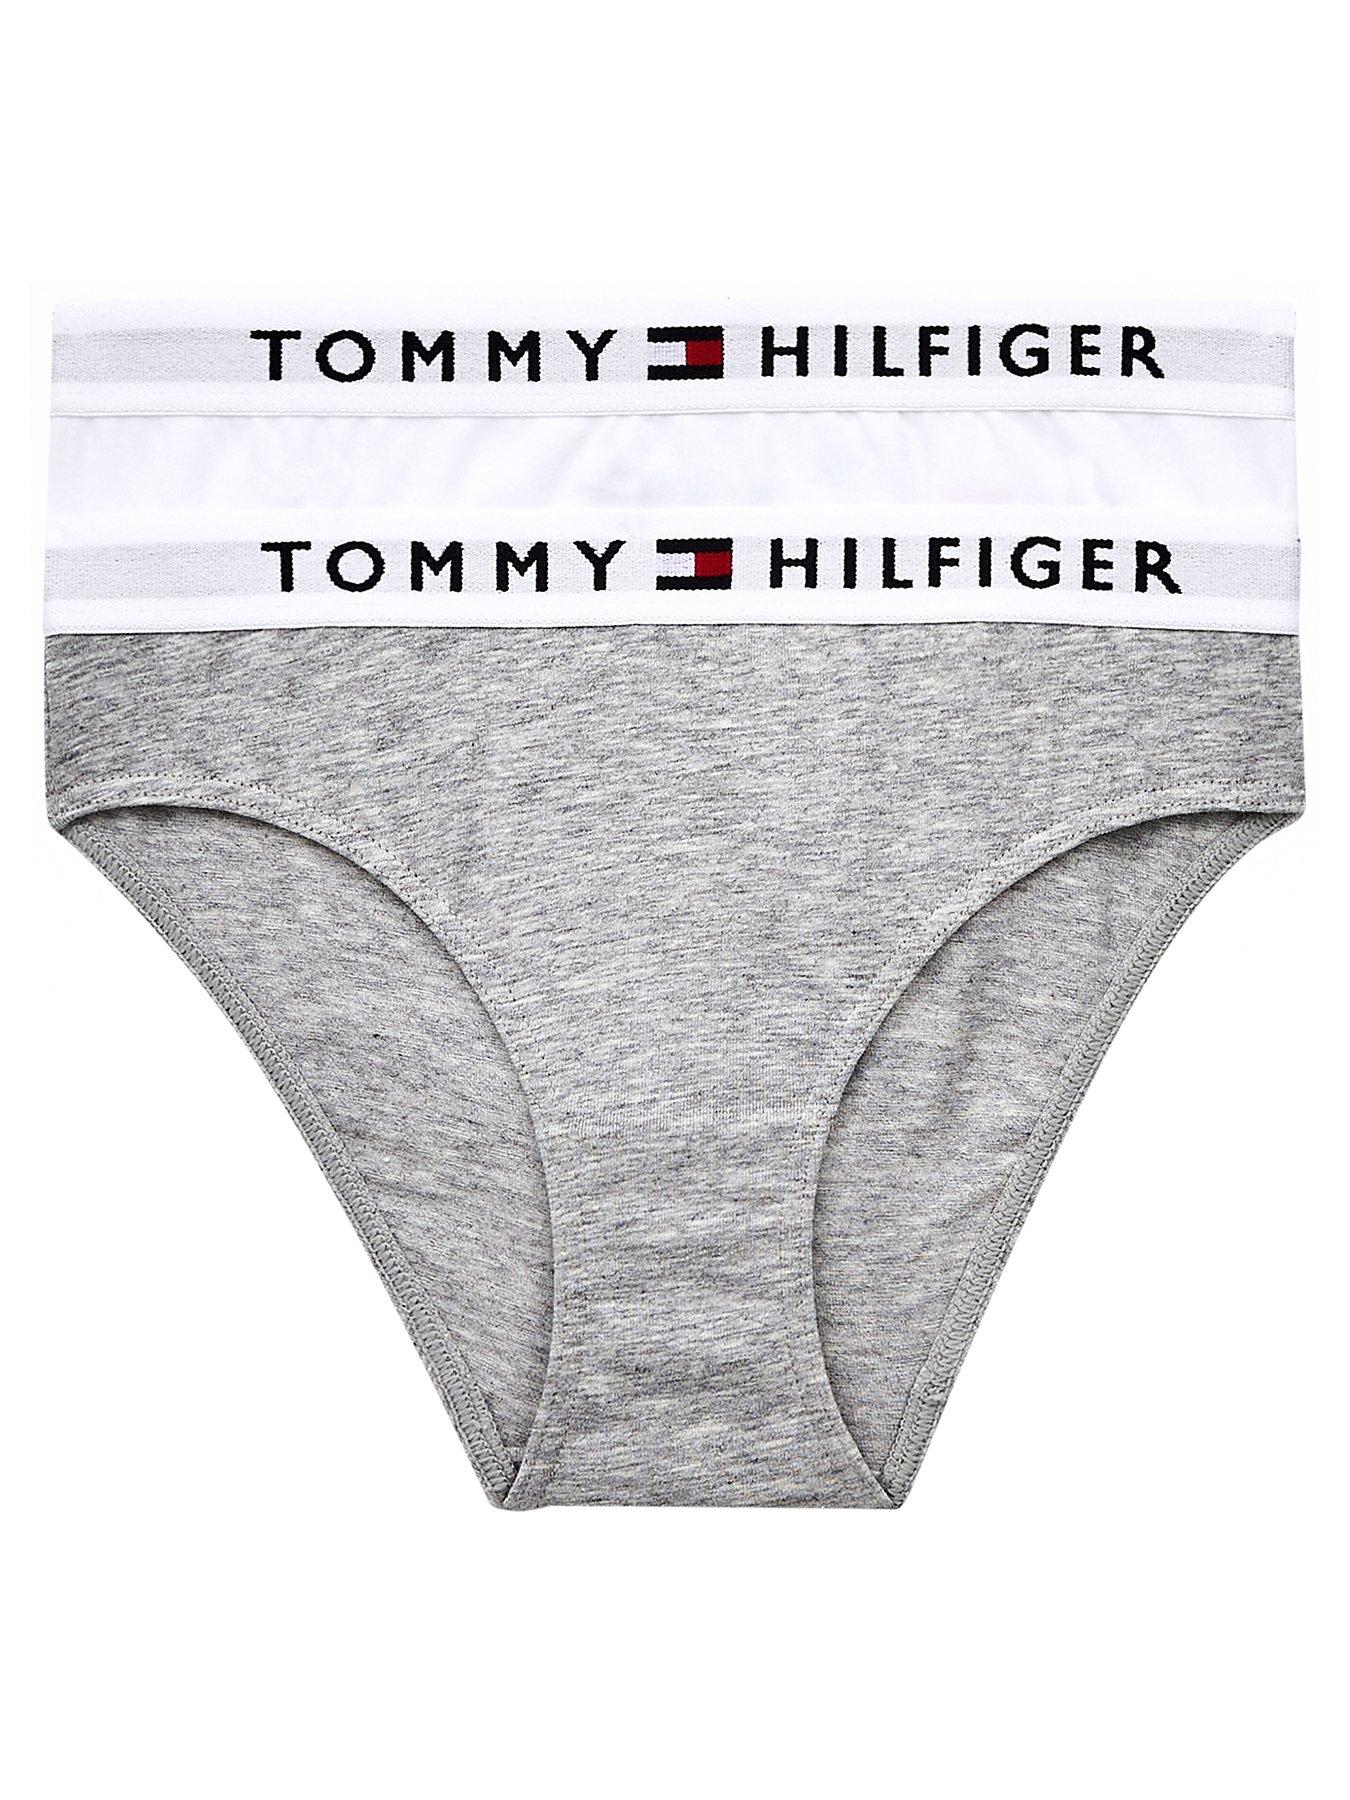 Tommy hilfiger, Underwear & socks, Girls clothes